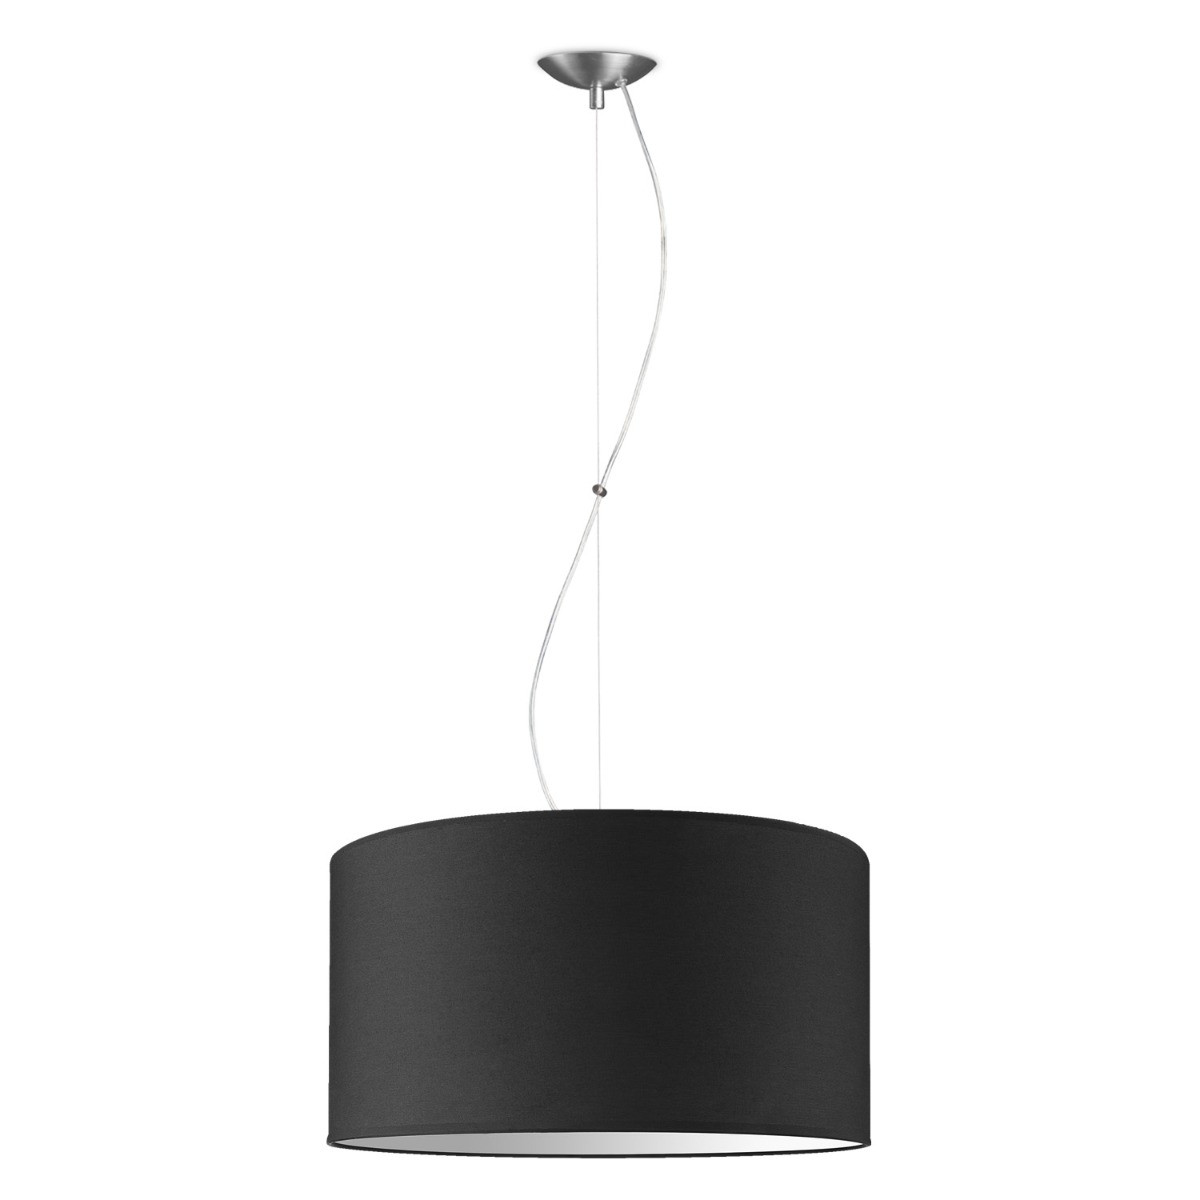 Light depot - hanglamp basic deluxe bling Ø 50 cm - zwart - Outlet